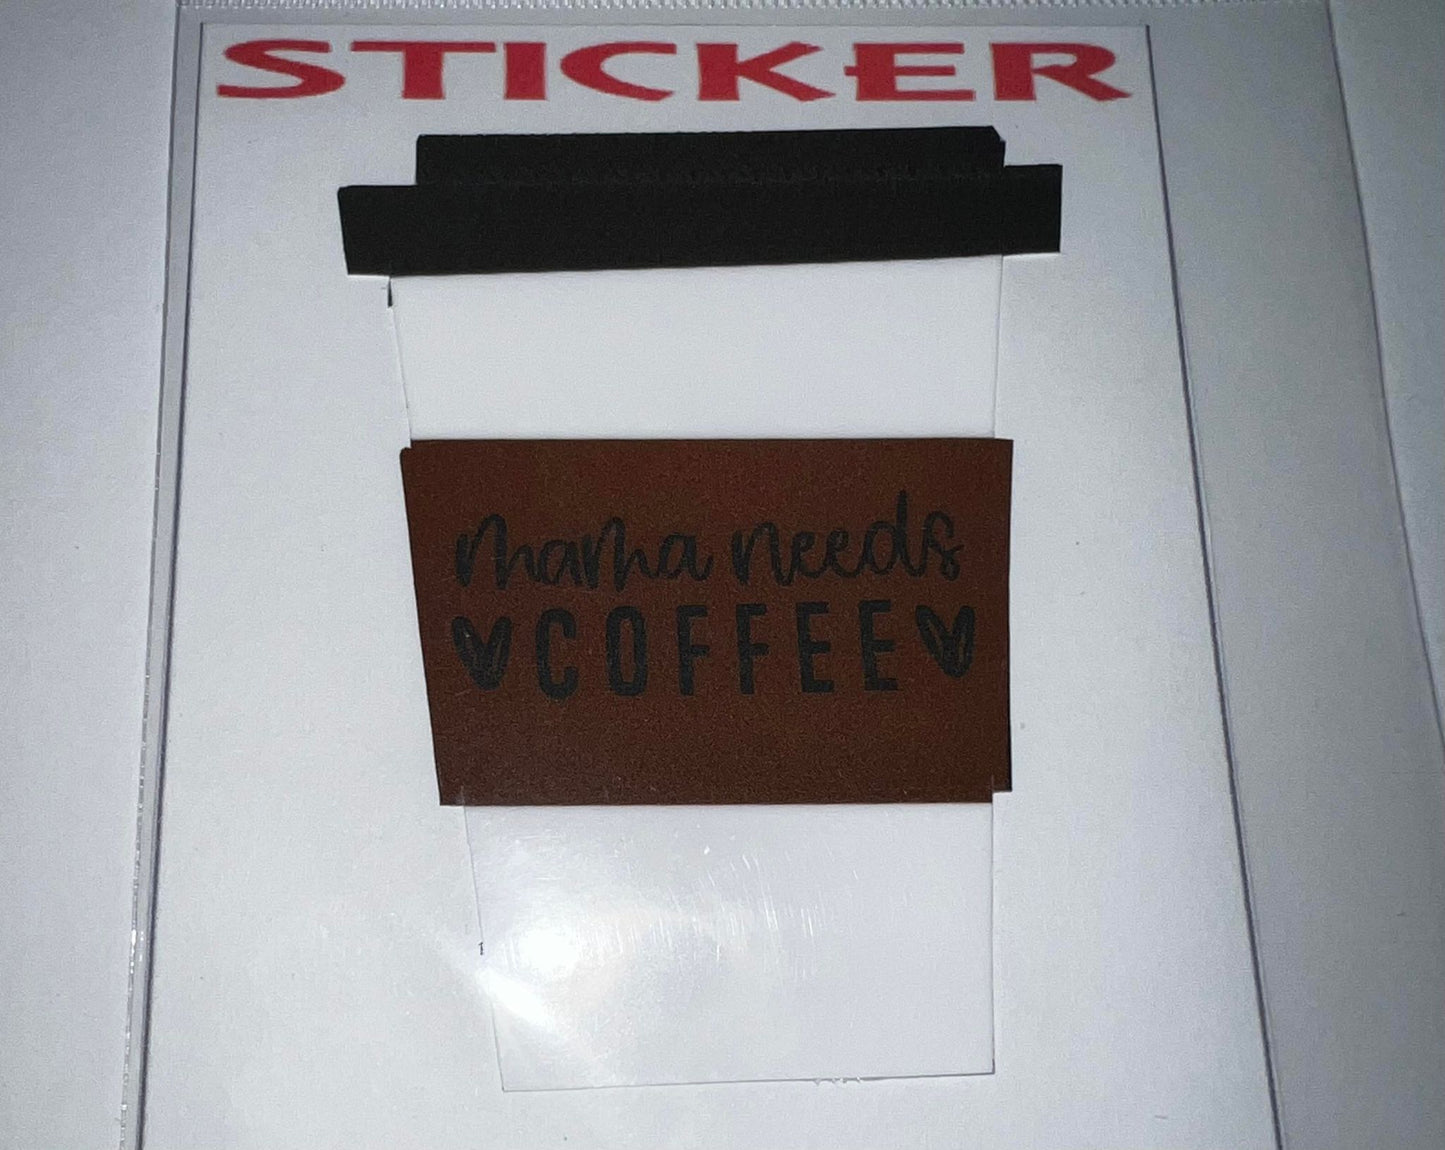 MAMA NEEDS COFFEE STICKER